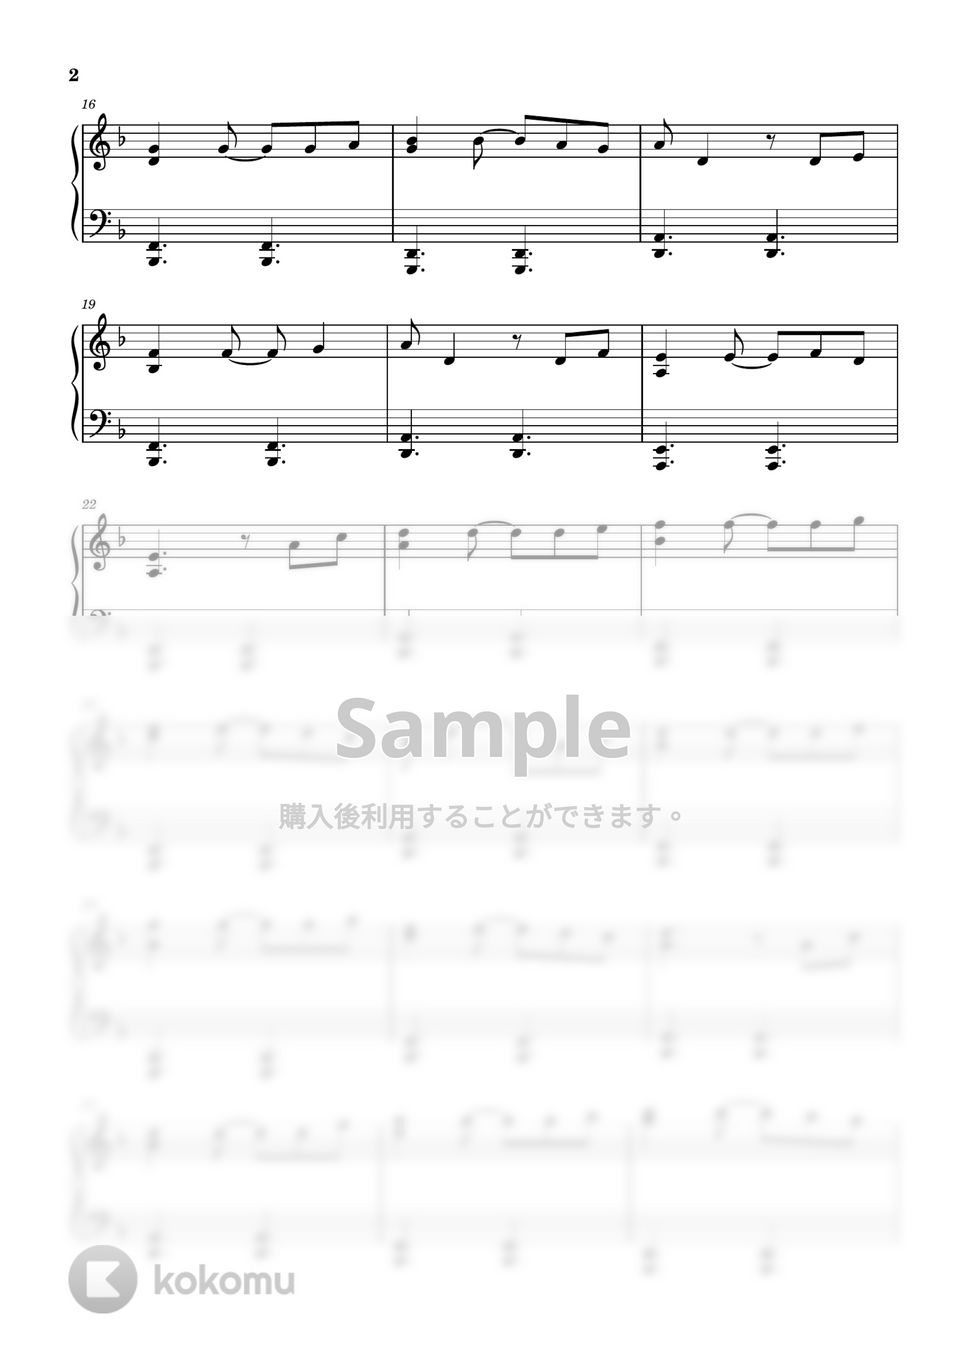 ハンス・ジマー - 彼こそが海賊 (ピアノ初中級ソロ) by pianon